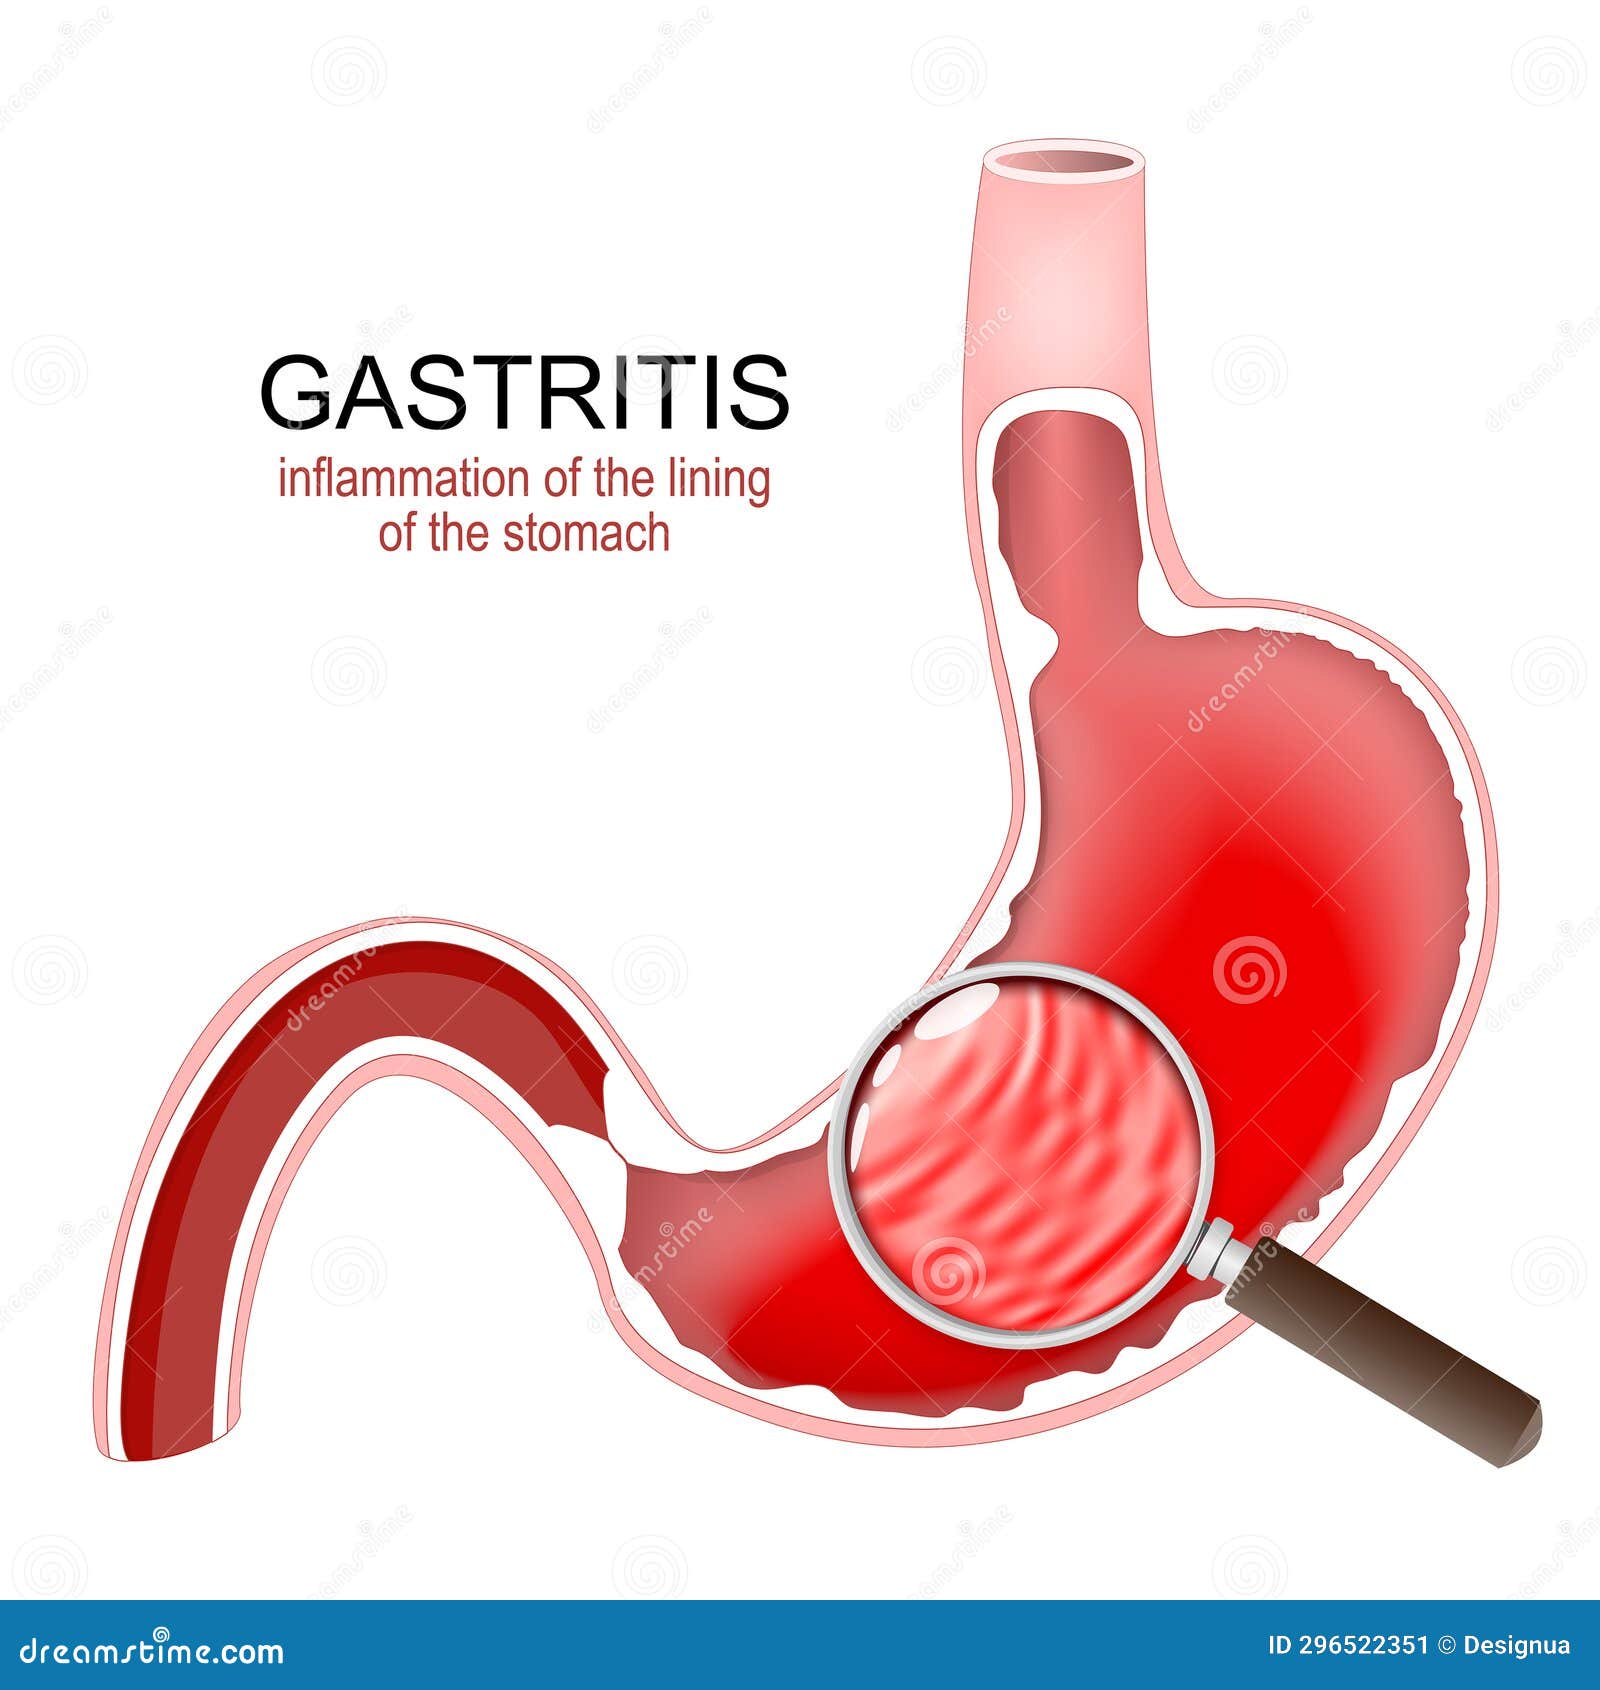 gastritis. stomach inflammation